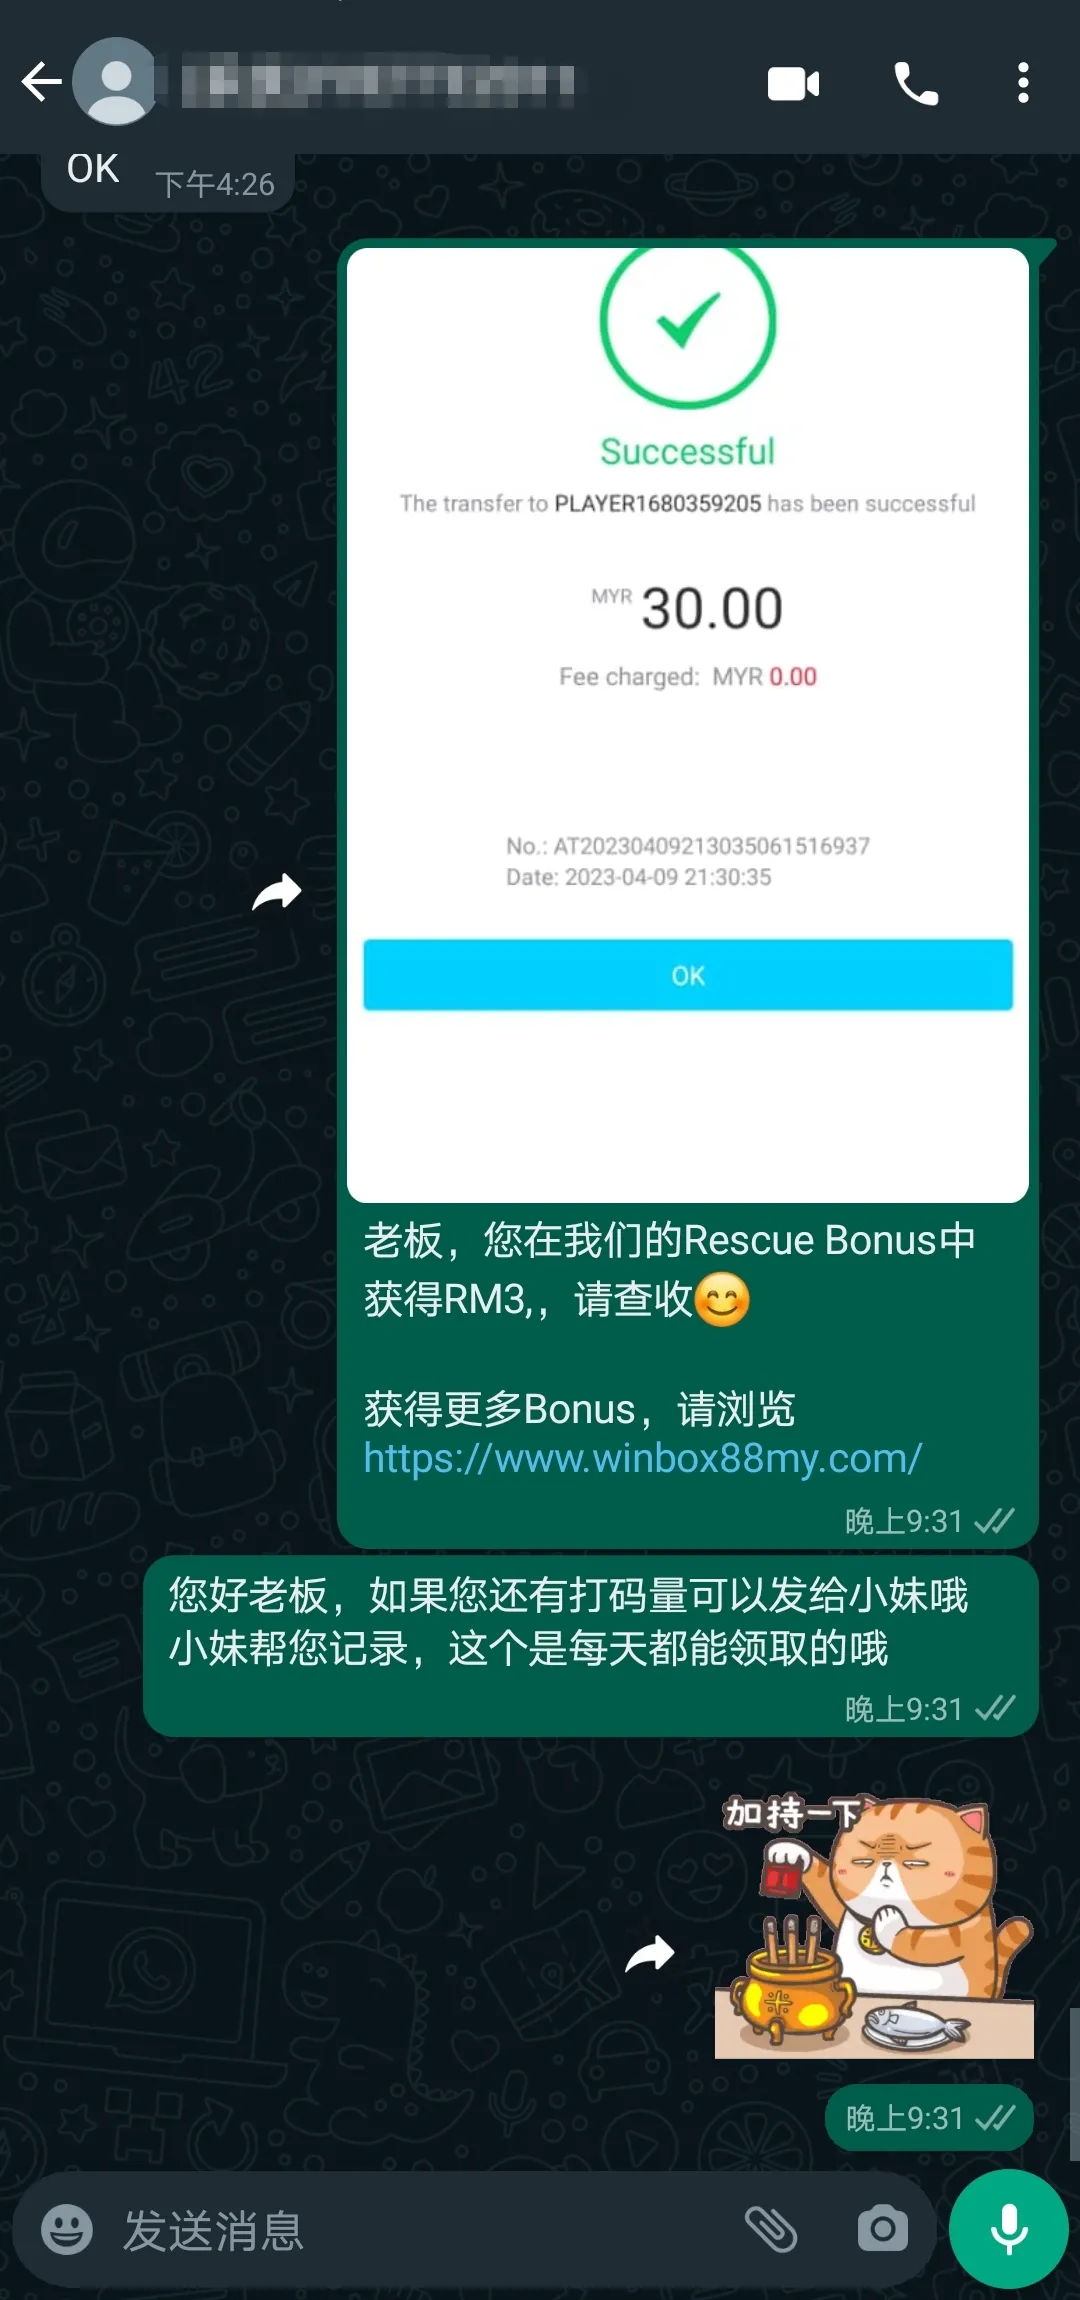 winbox rescue bonus past winner screenshot 12